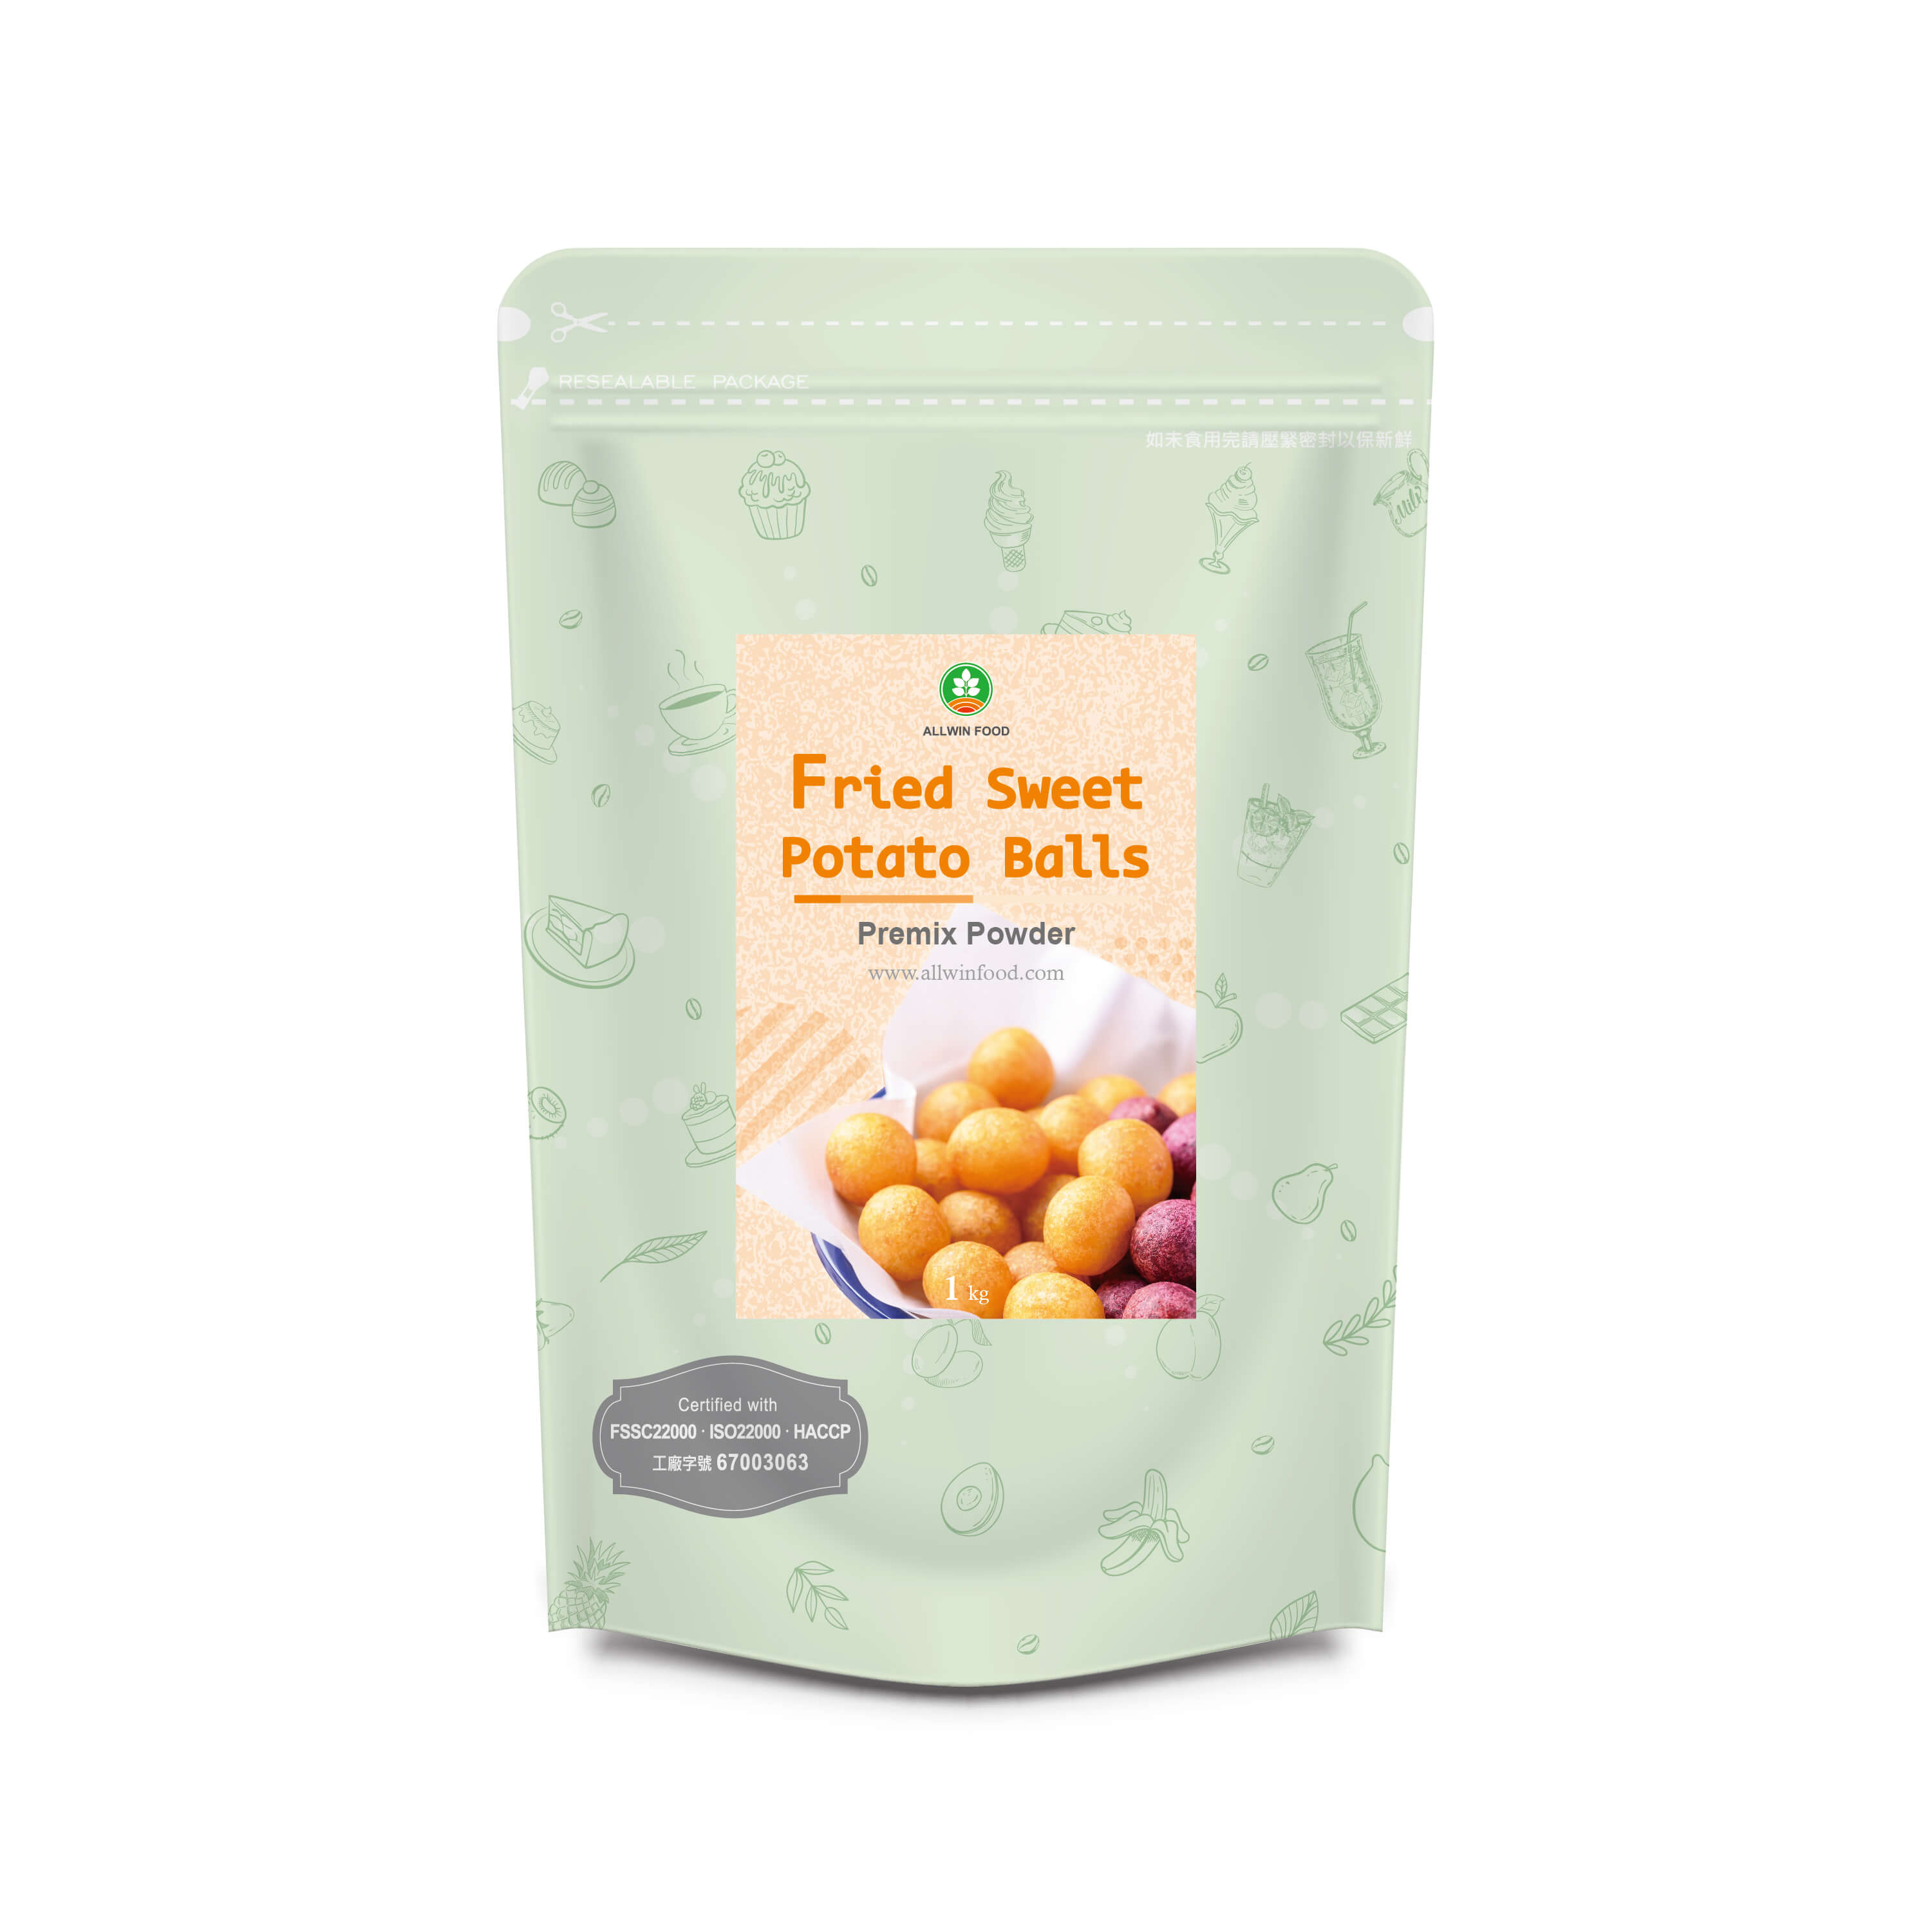 Premix Powder for Fried Sweet Potato Balls